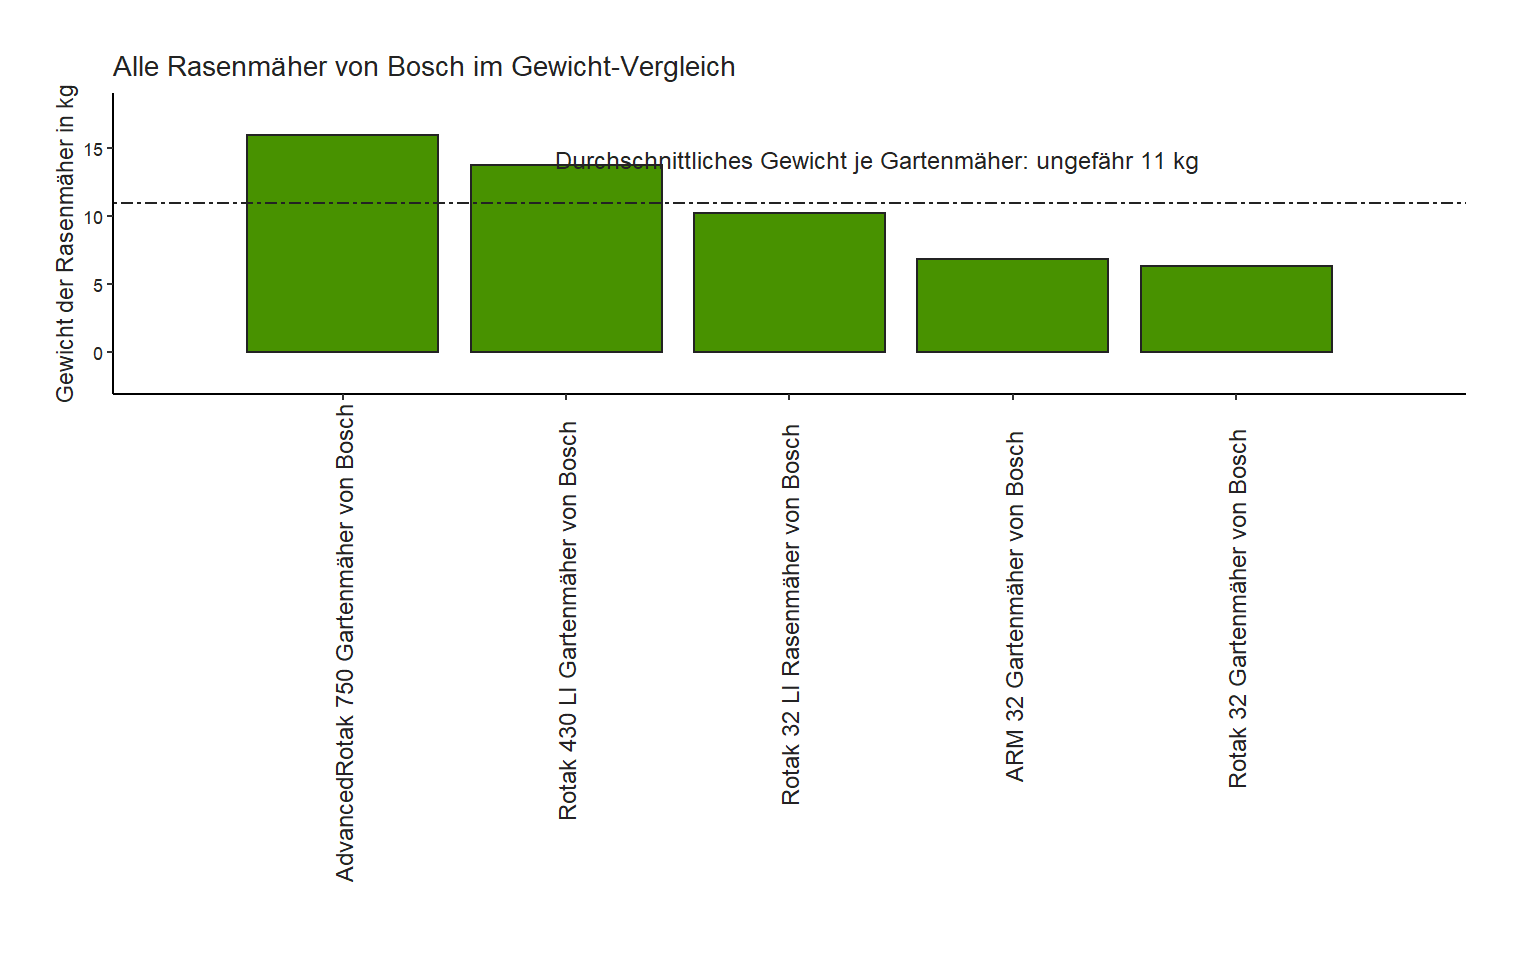 Bosch Gewicht-Vergleich Gartenmäher